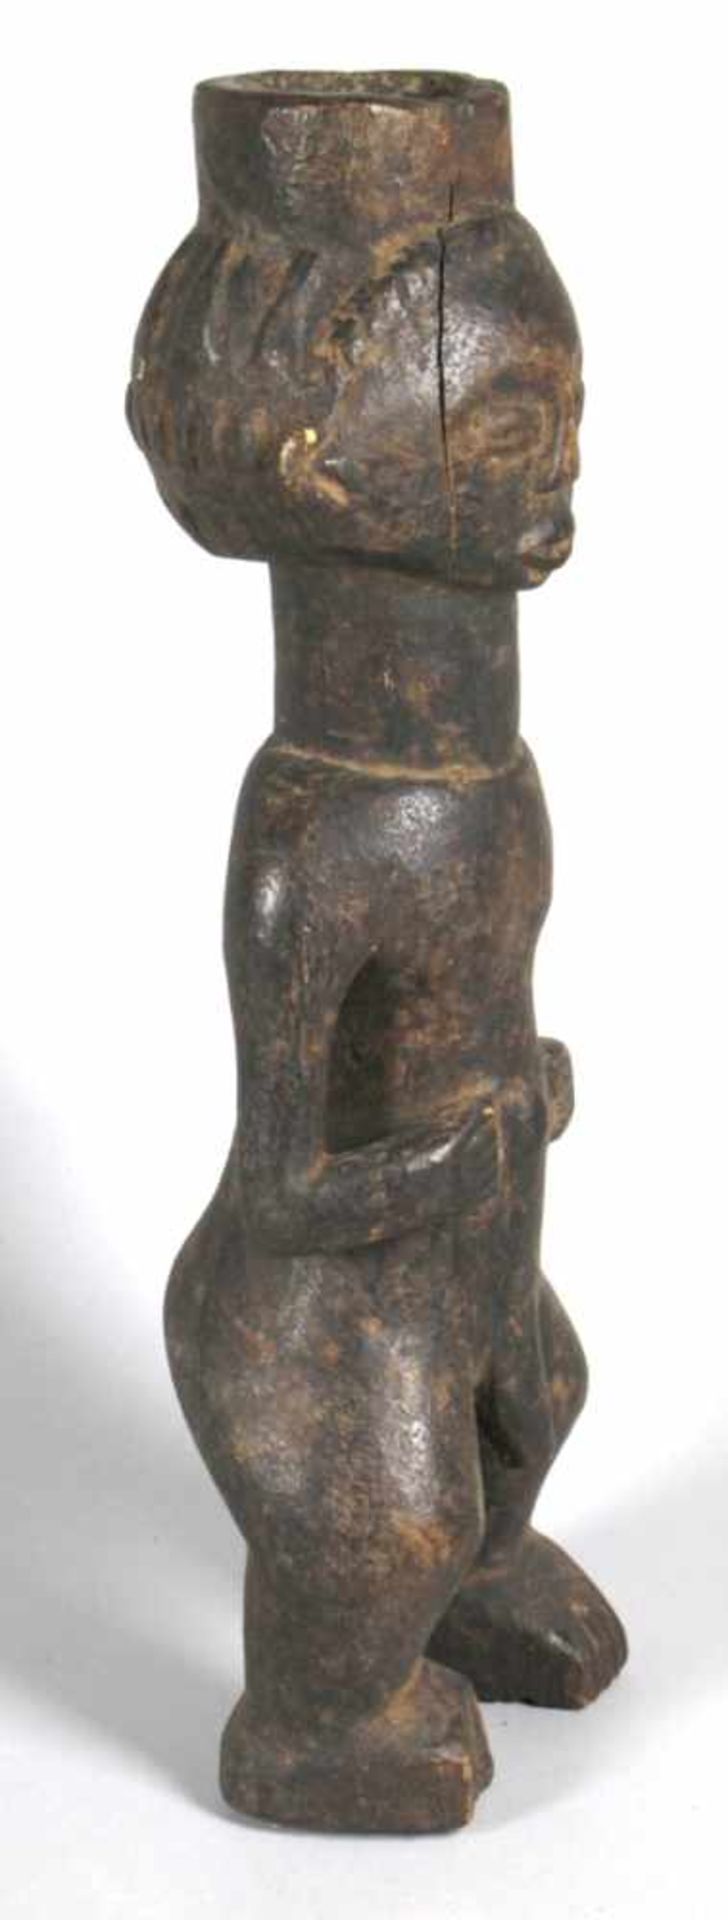 Ritual-Figur, Luba, Kongo, stark reduzierte, stehende, männliche Darstellung mit auf Bauchabgelegten - Bild 2 aus 4